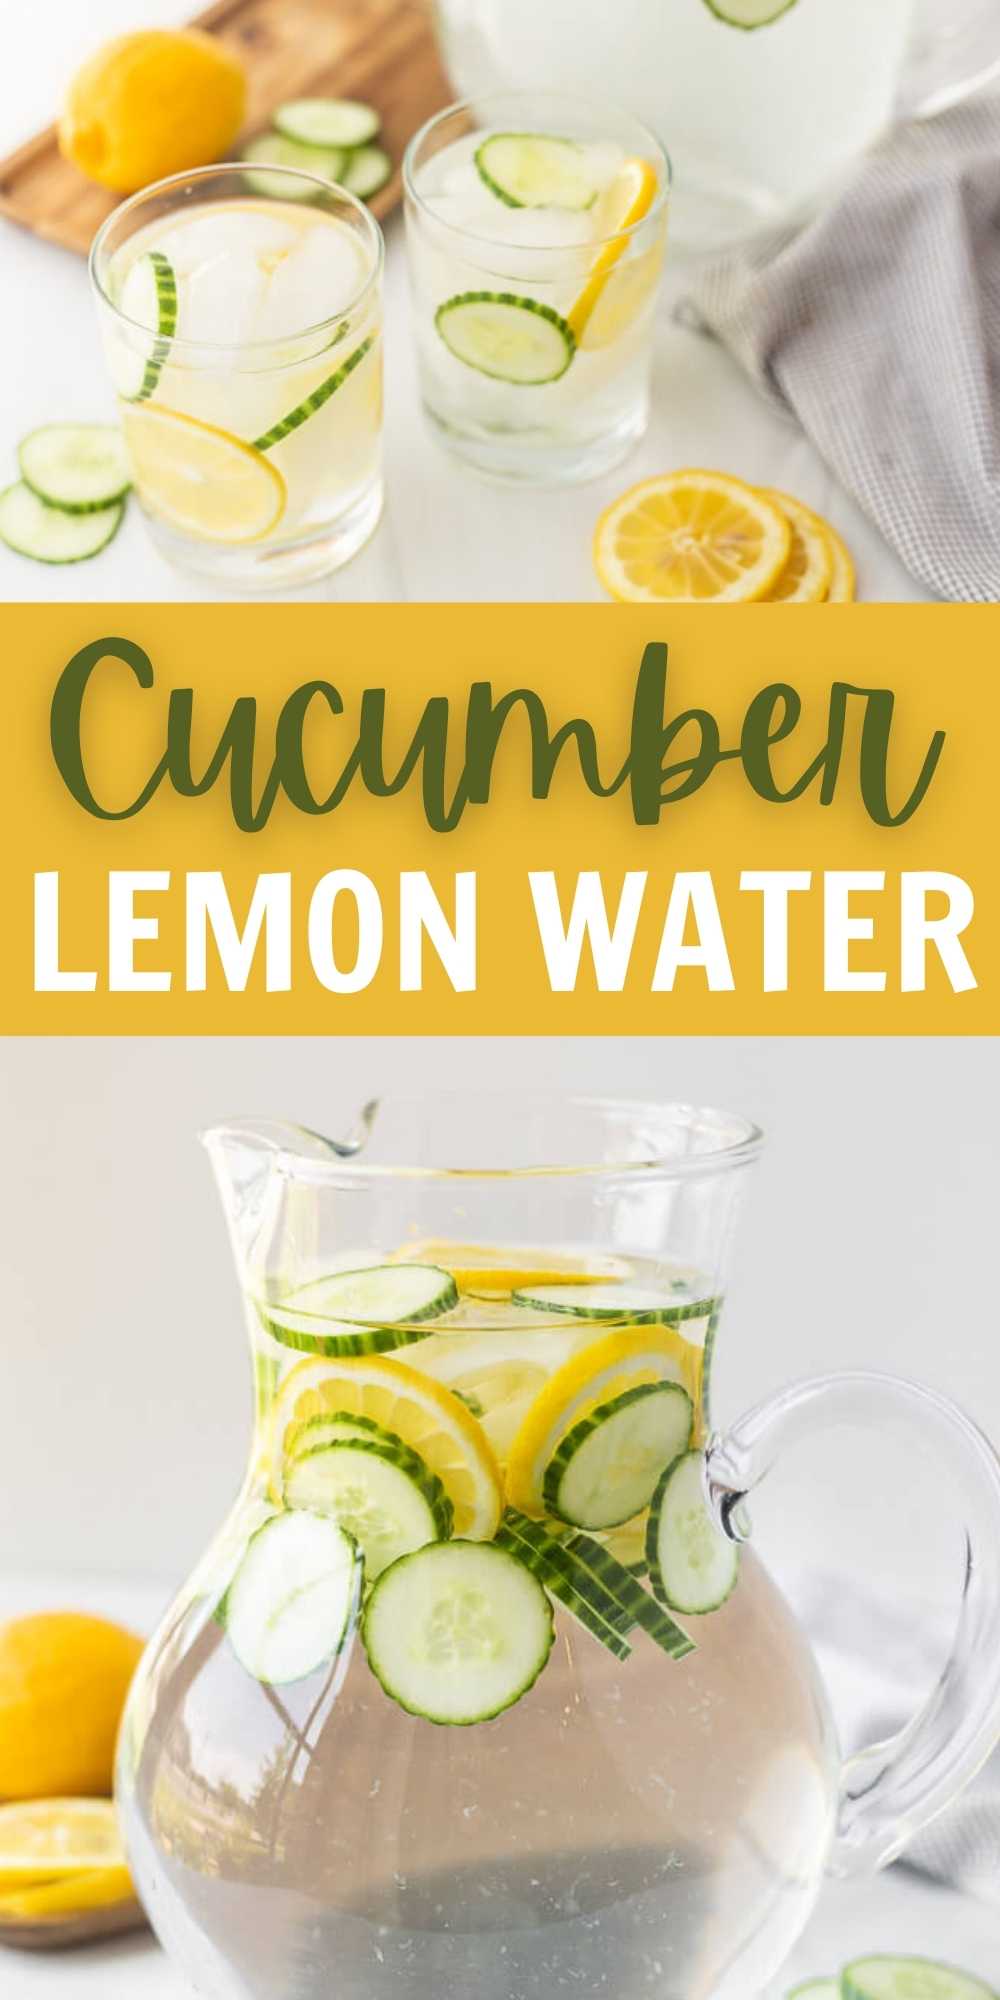 https://www.eatingonadime.com/wp-content/uploads/2022/05/Cucumber-Lemon-Water-3.jpg